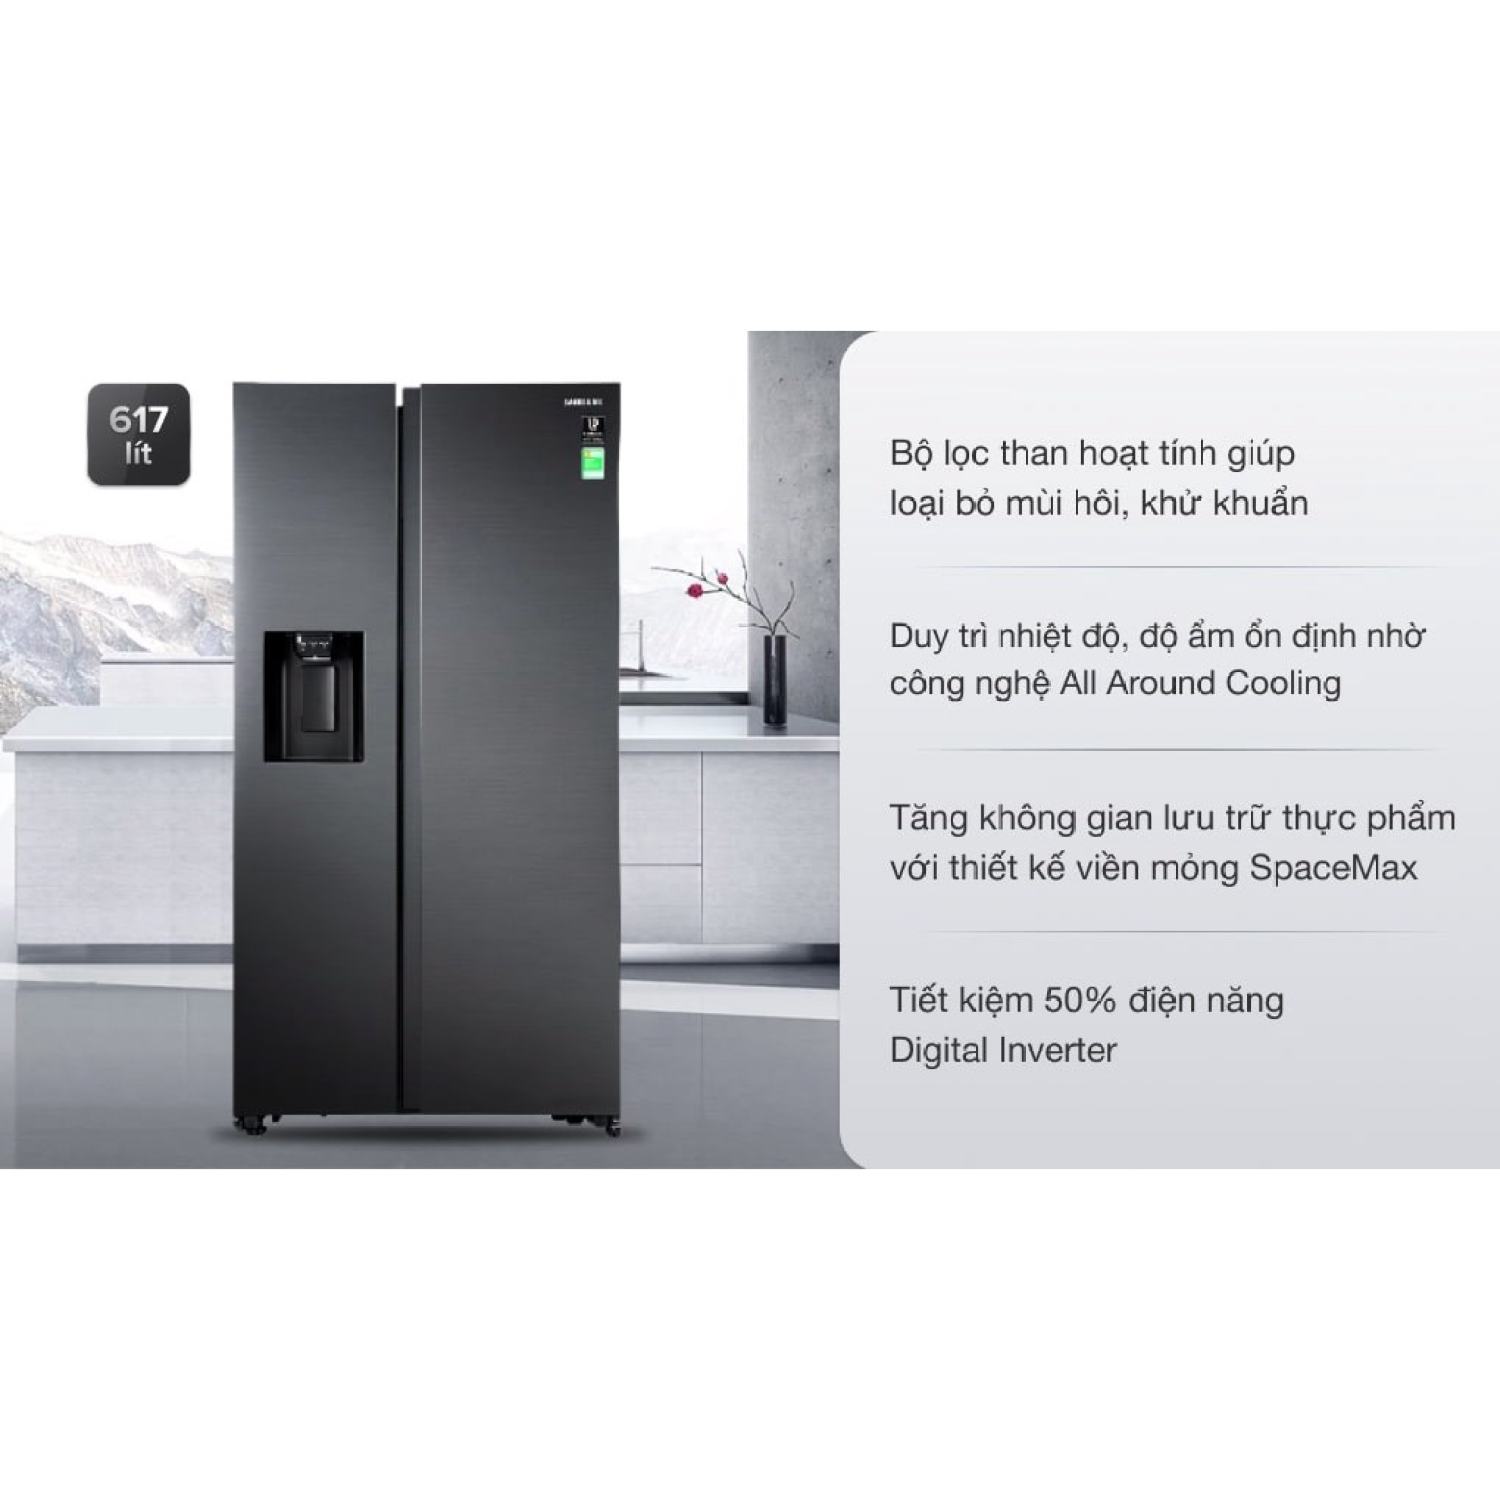 Giá bán Tủ lạnh Samsung Inverter 617 lít RS64R5301B4/SV Chính hãng BH: 24 tháng trên toàn quốc